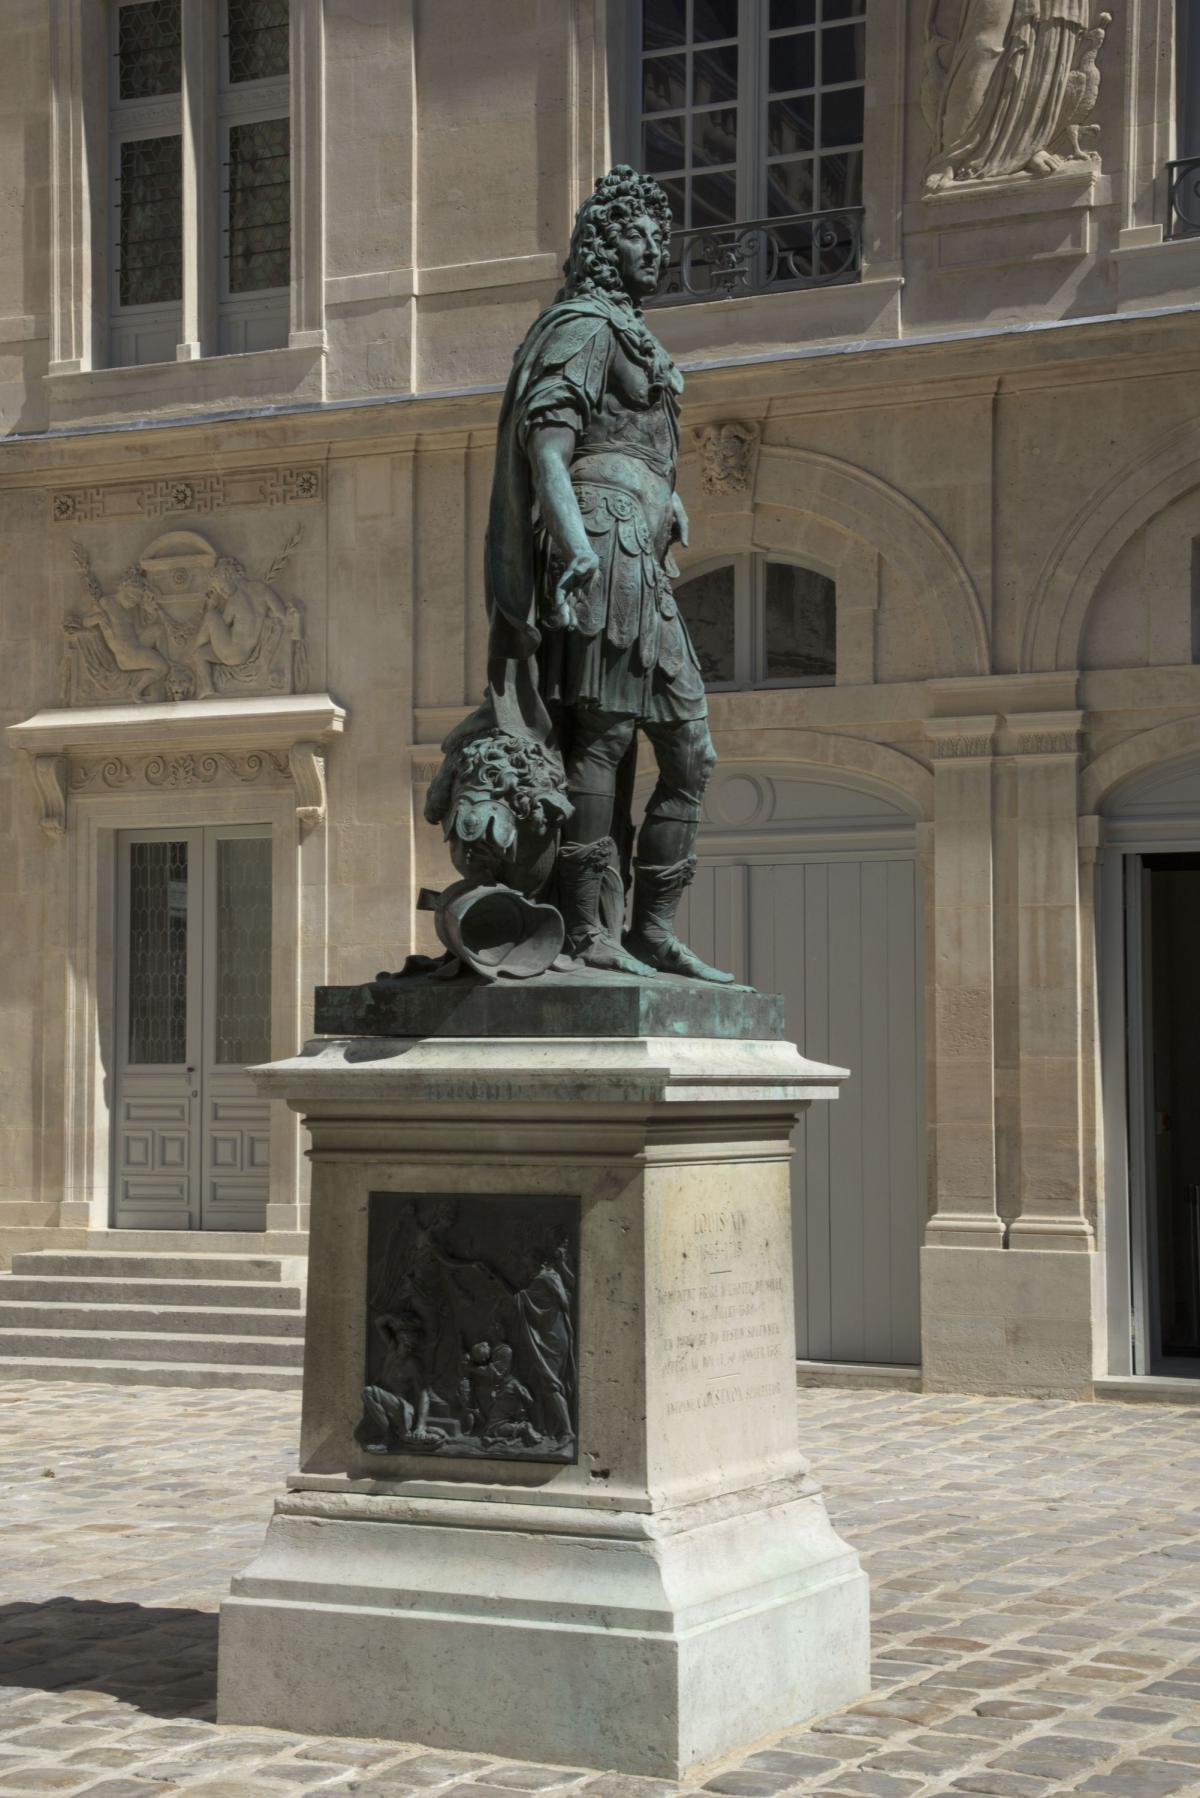 Louis XIV of France - The Collection - Museo Nacional del Prado